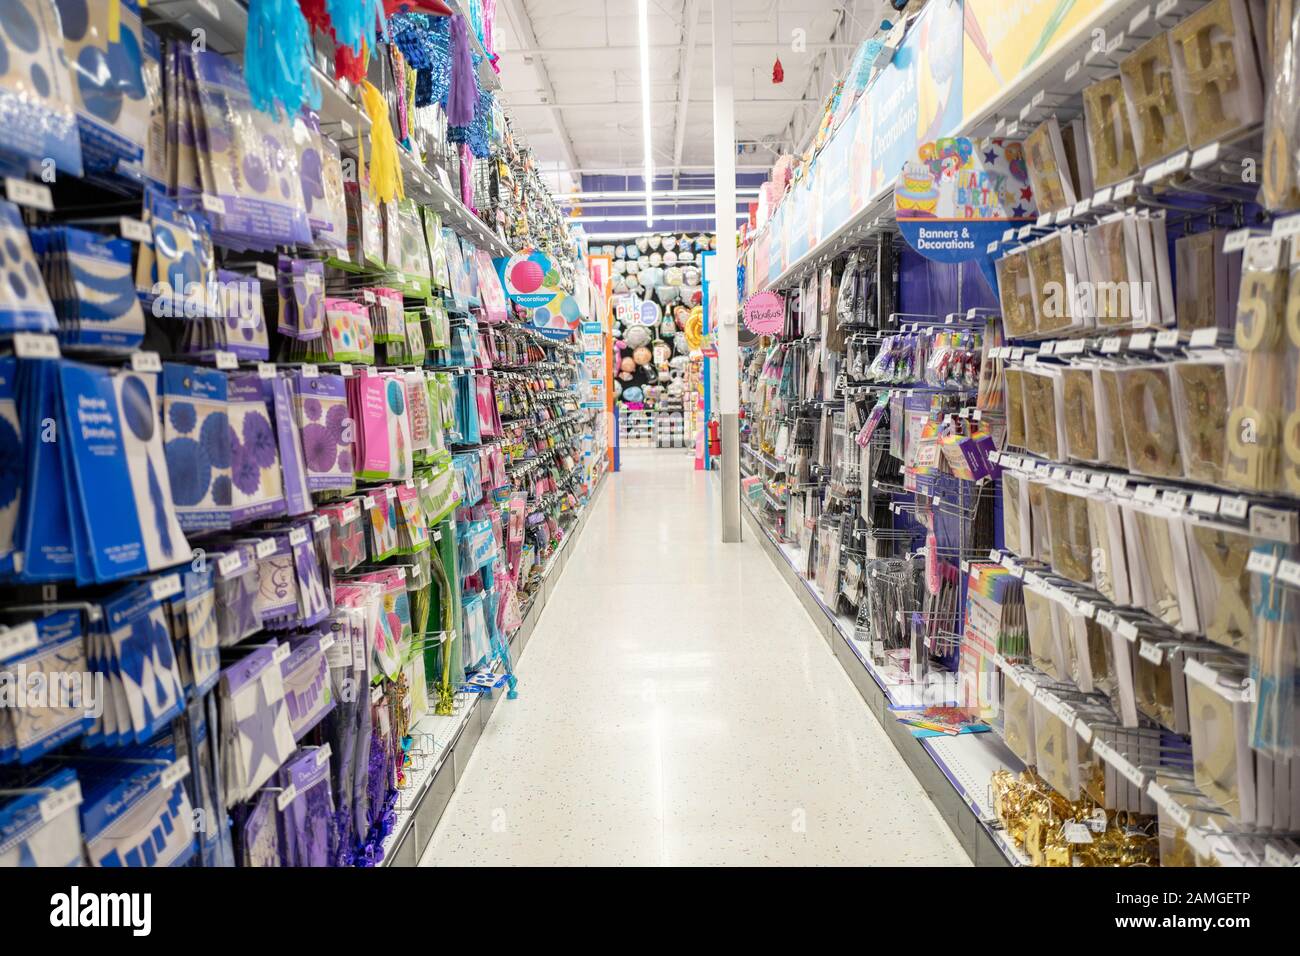 Sehen Sie sich die Gänge eines Party-Stores in Pleasanton, Kalifornien, an, das mit einer großen Auswahl an Waren gestapelt ist, am 23. November 2019. Viele Geschäfte erwarten einen erhöhten Verkehr während der geschäftigen Einkaufszeit am Black Friday. () Stockfoto